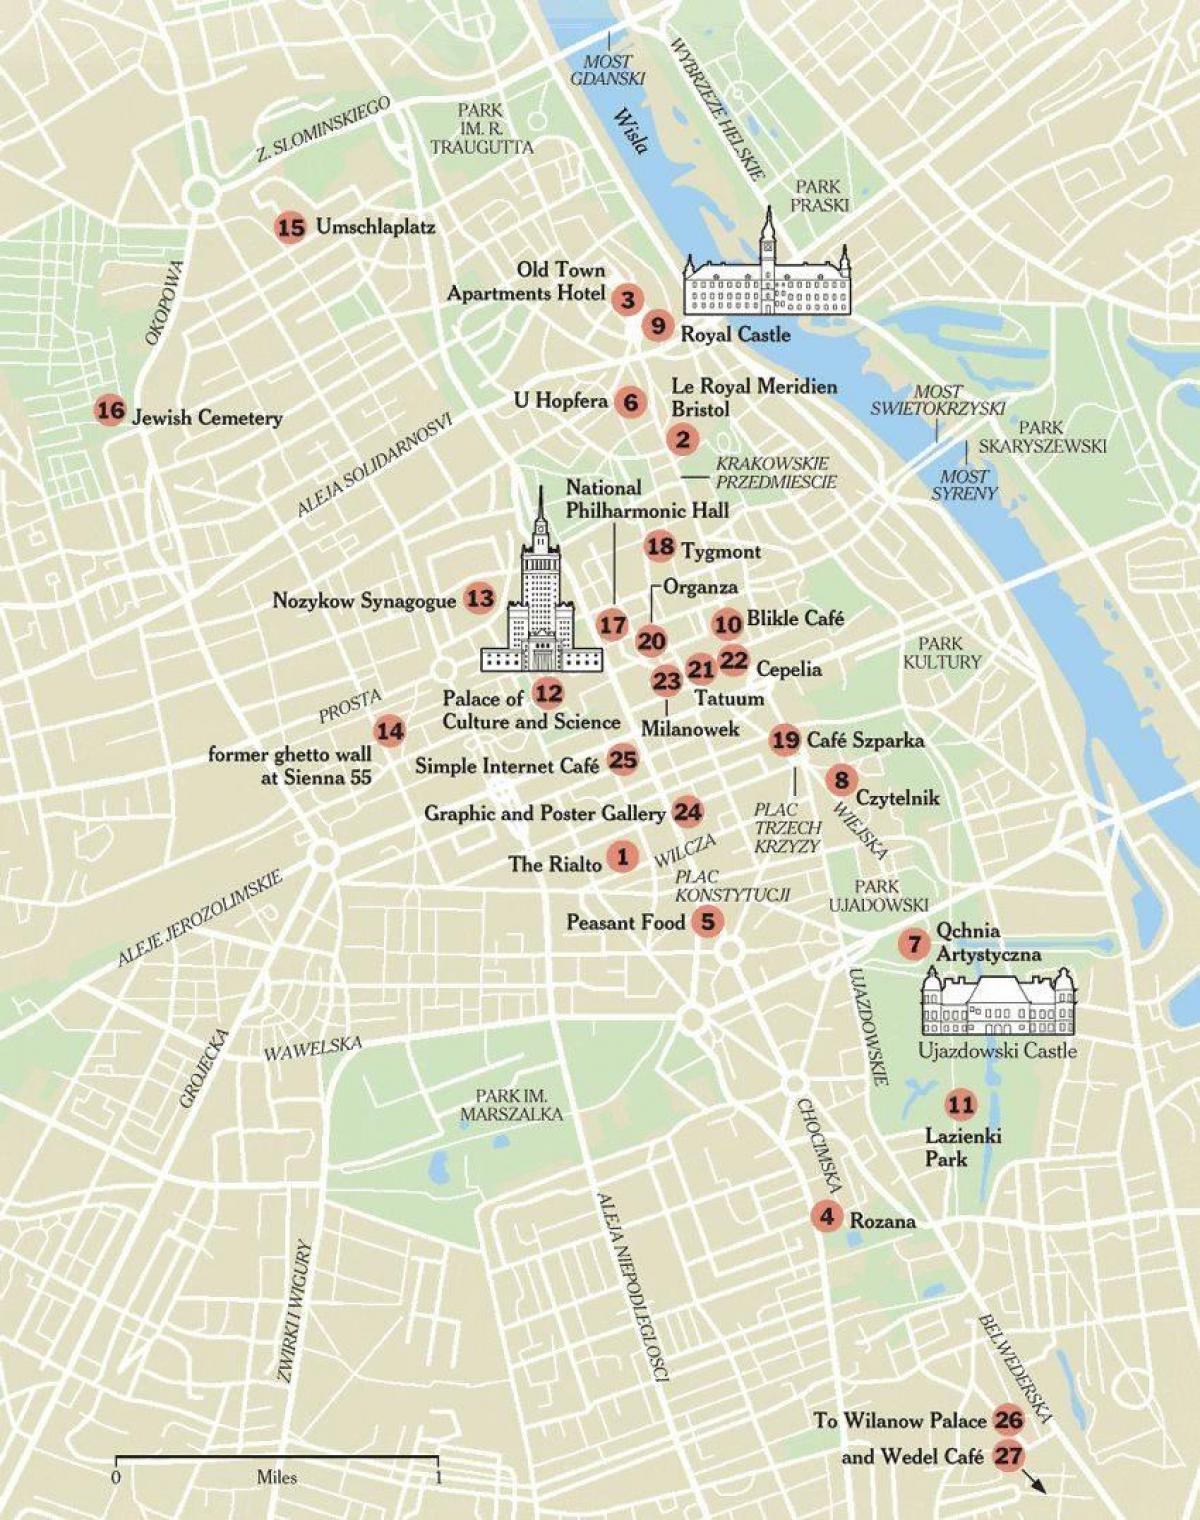 térkép Varsói a turisztikai látványosságok